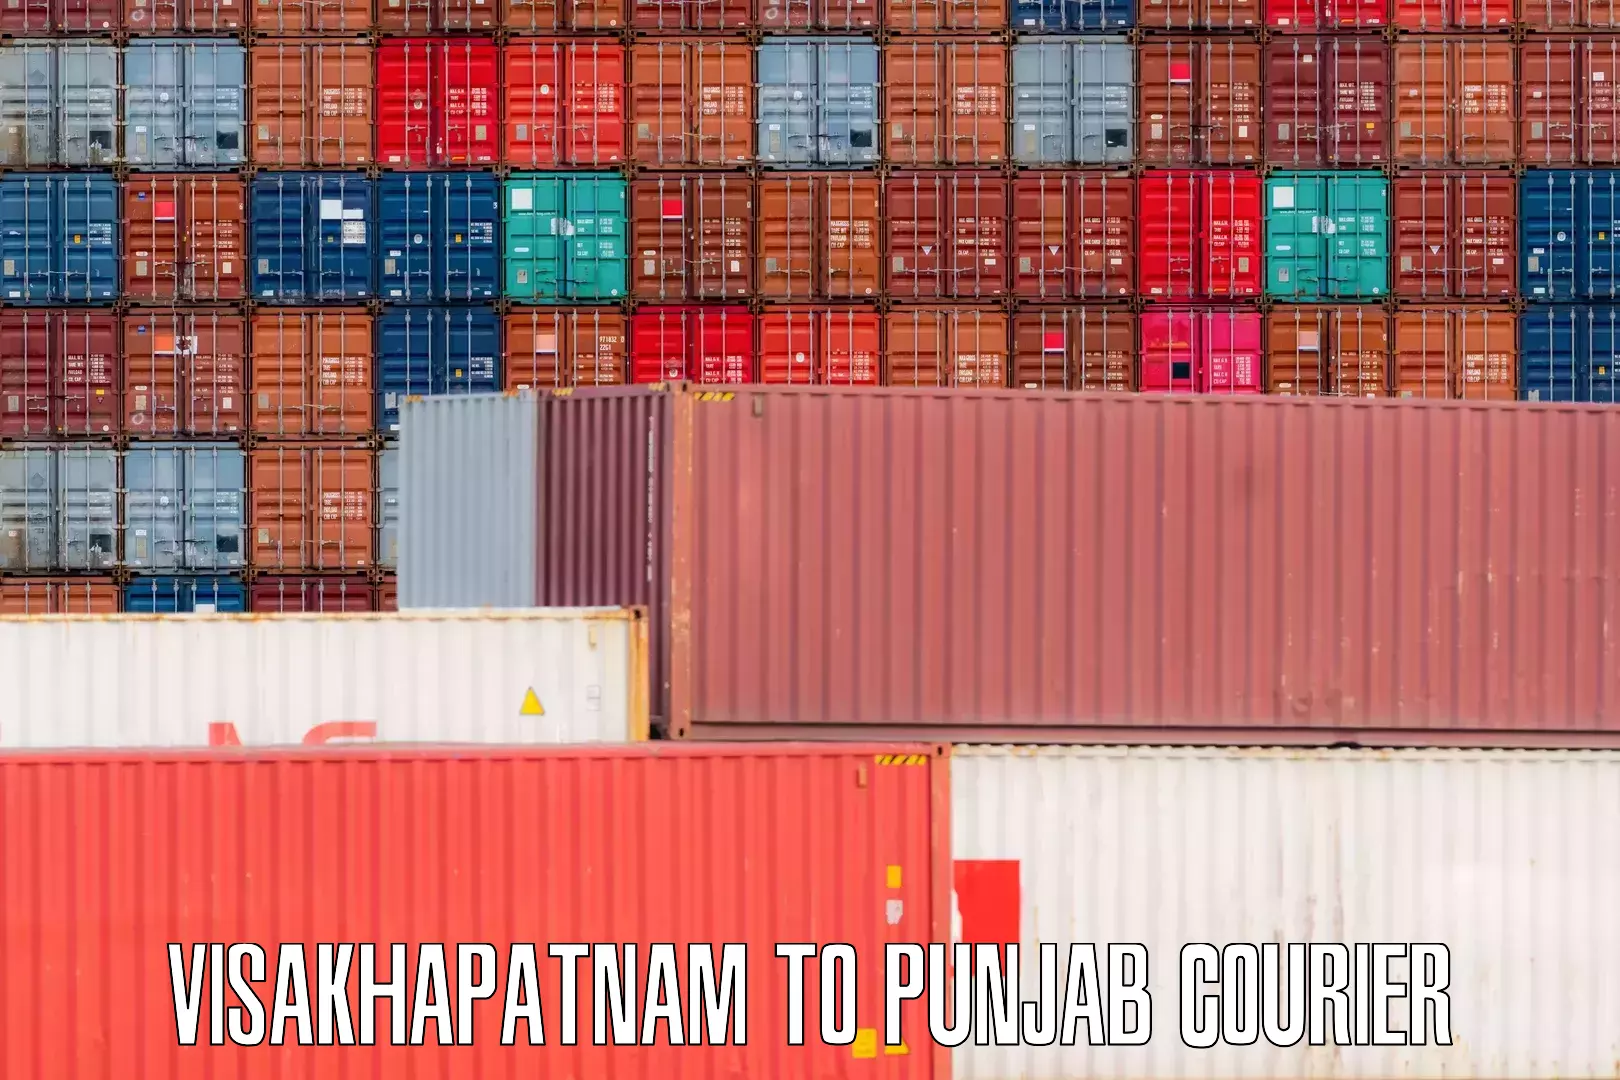 Baggage shipping experts Visakhapatnam to Punjab